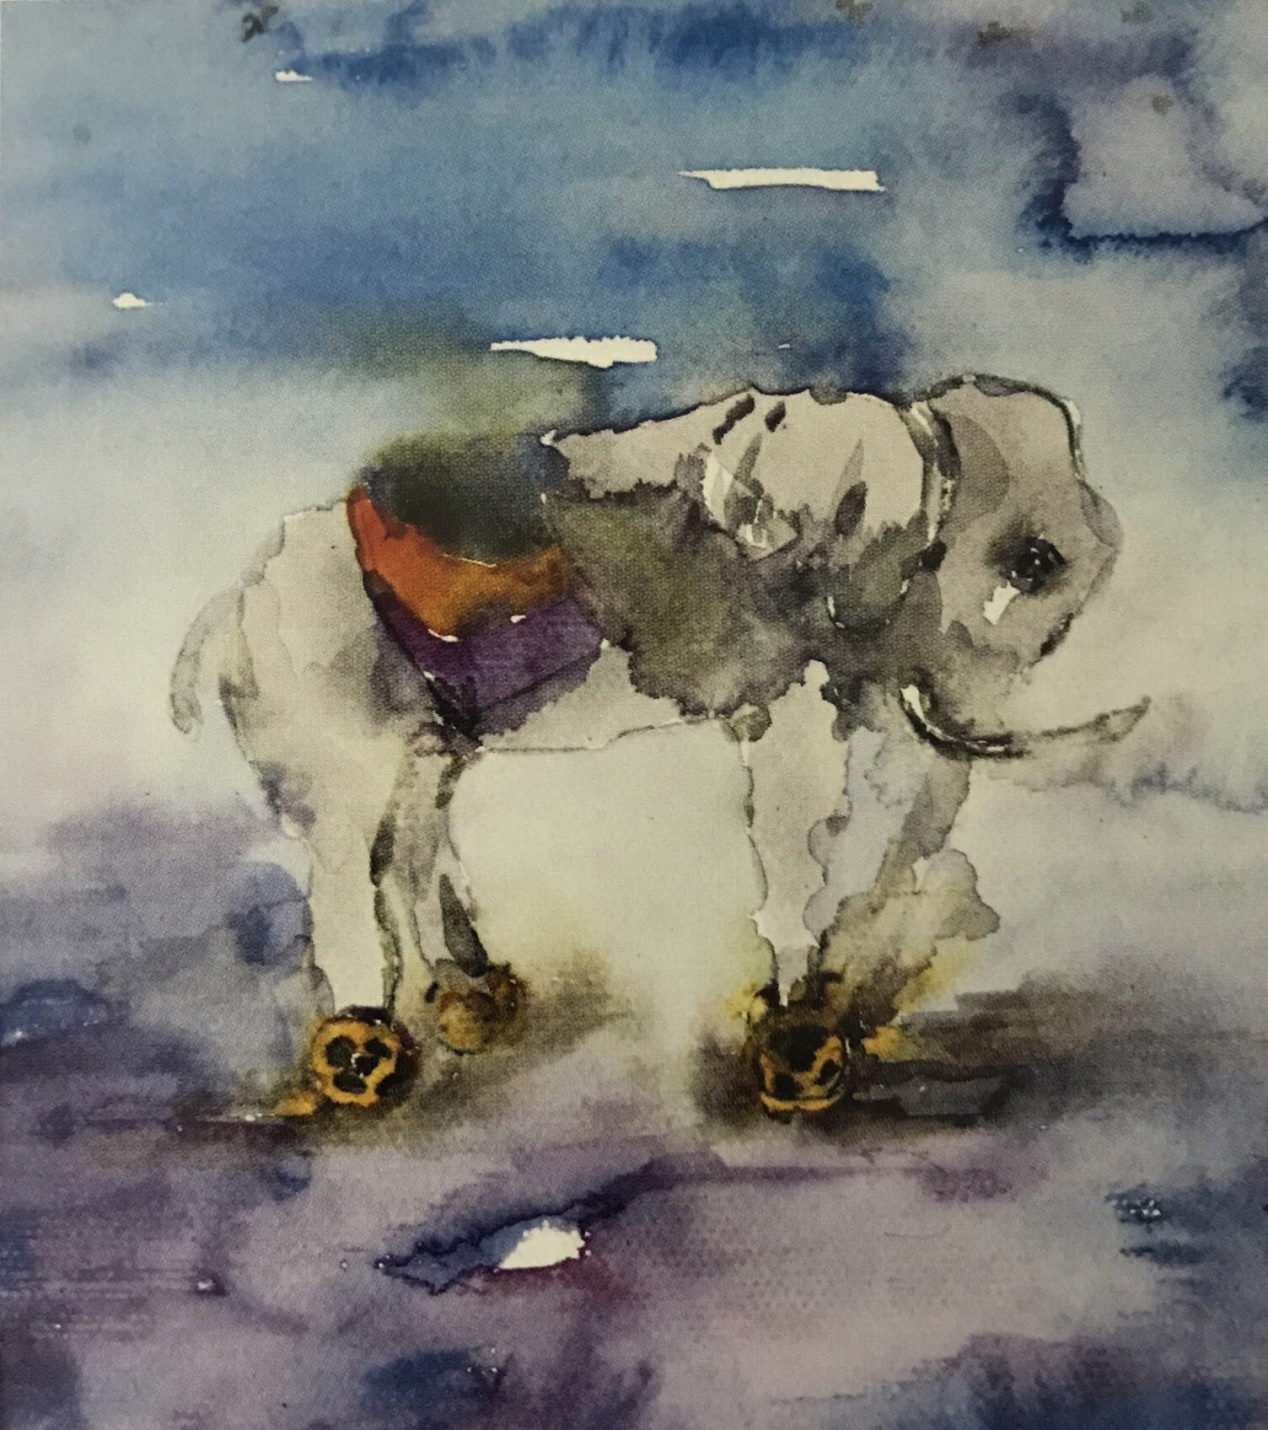 评析：作品表现了一只脚踏轮子的小白象，构图合理，用色大胆，色调统一，画面完整，具有表现意识。